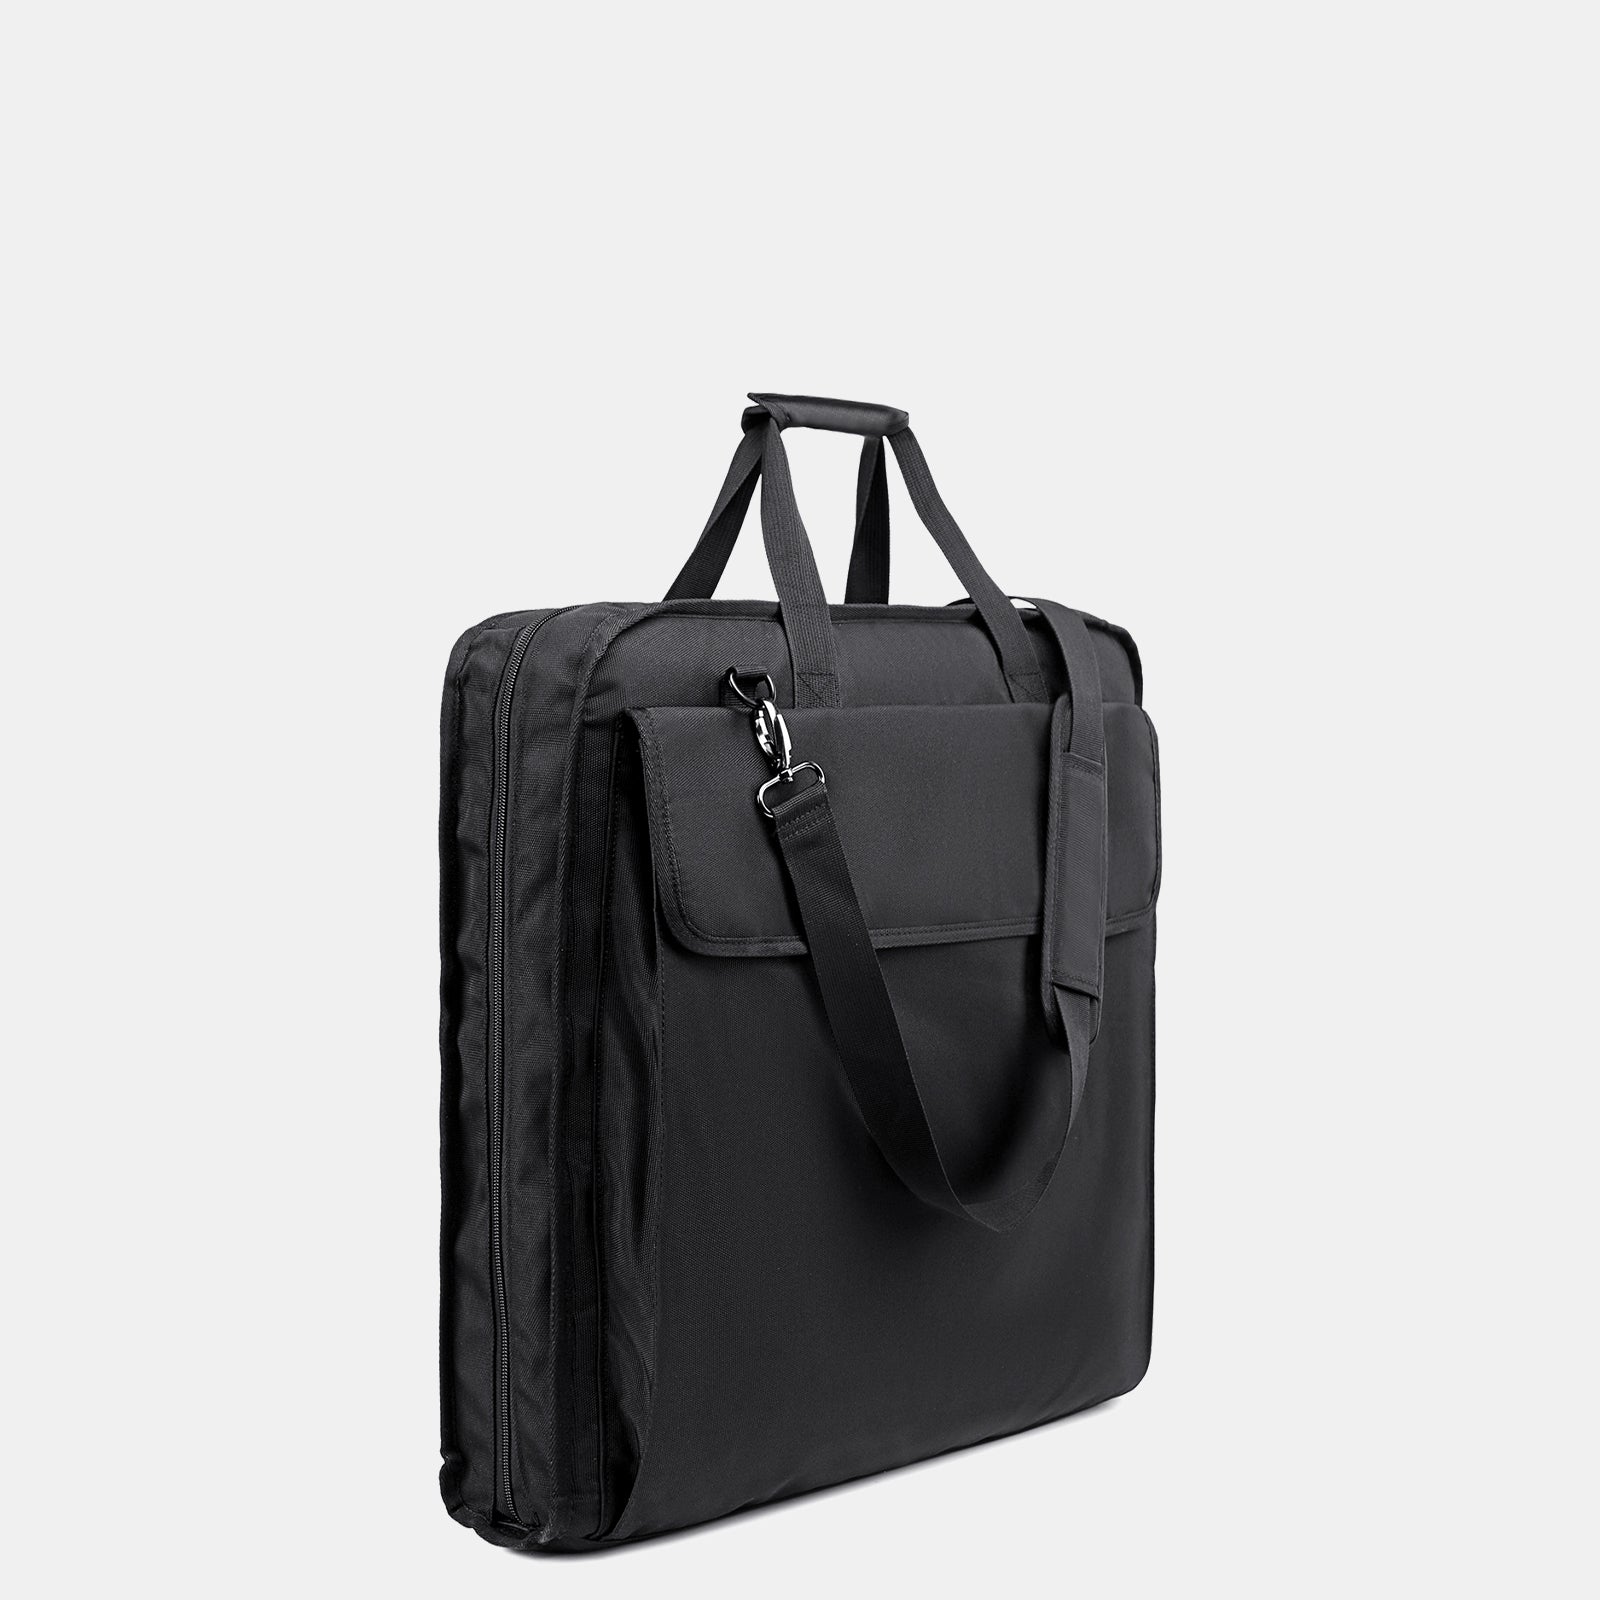 Black Suit Bag